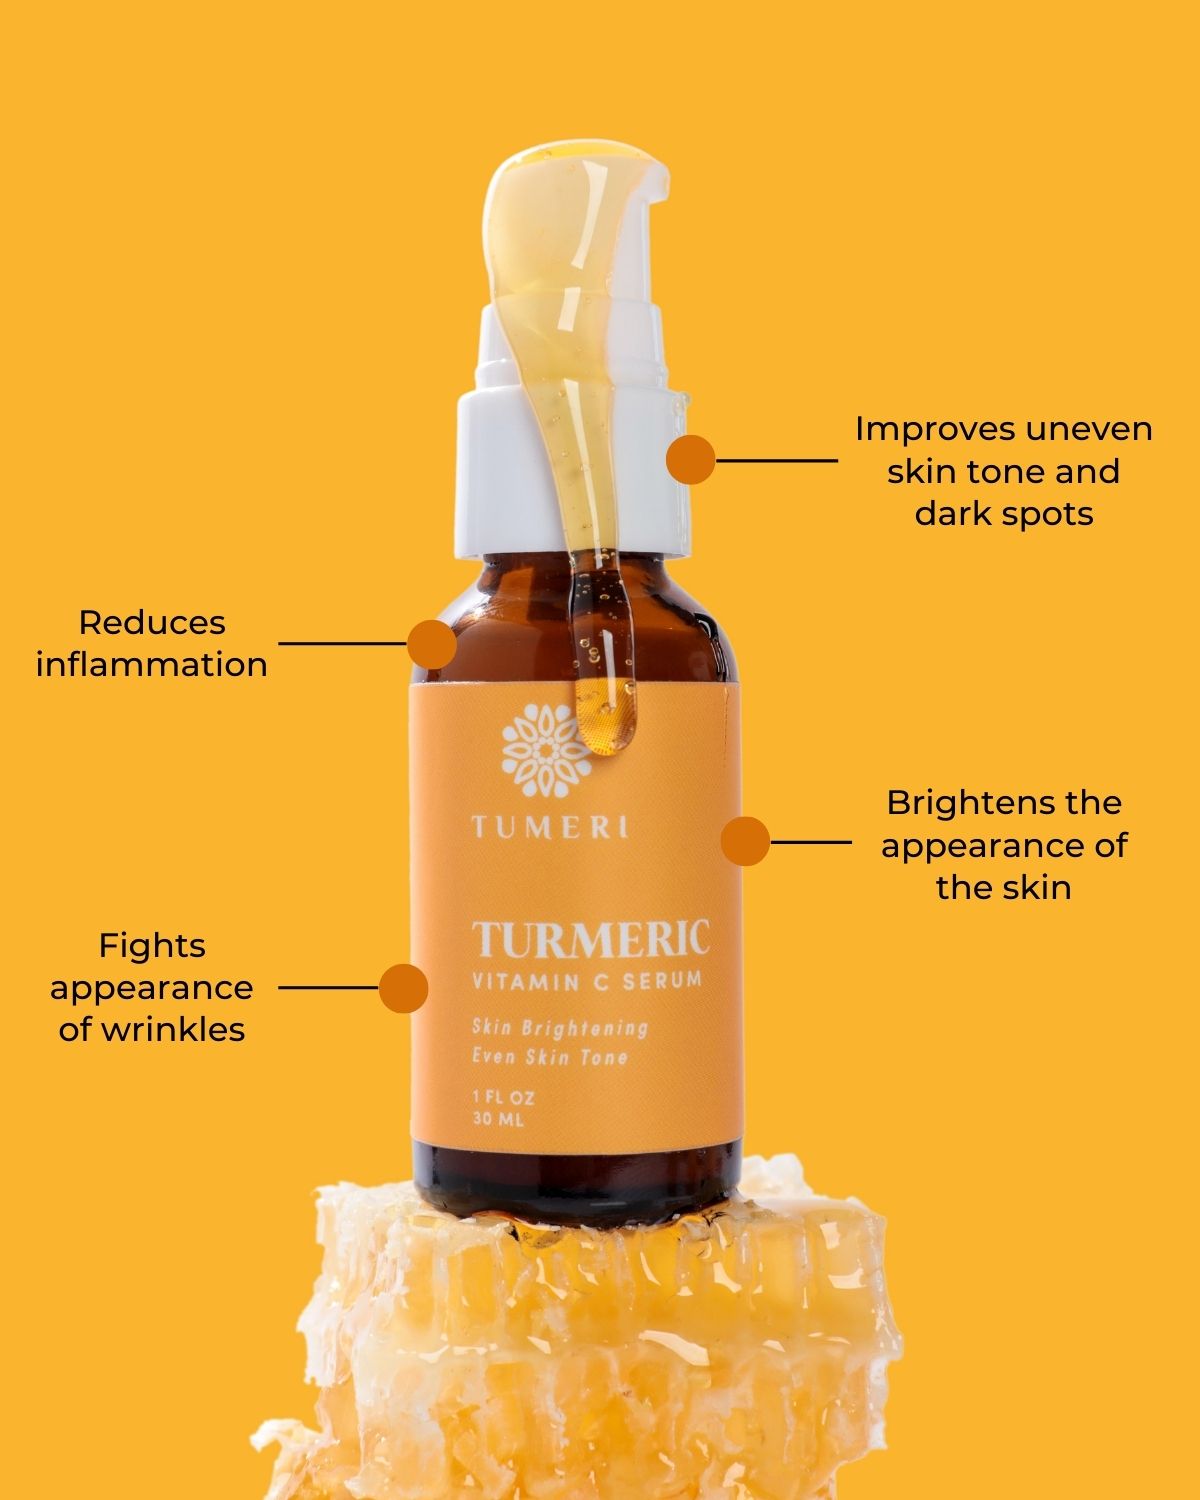 Tumeri bottle explained in details